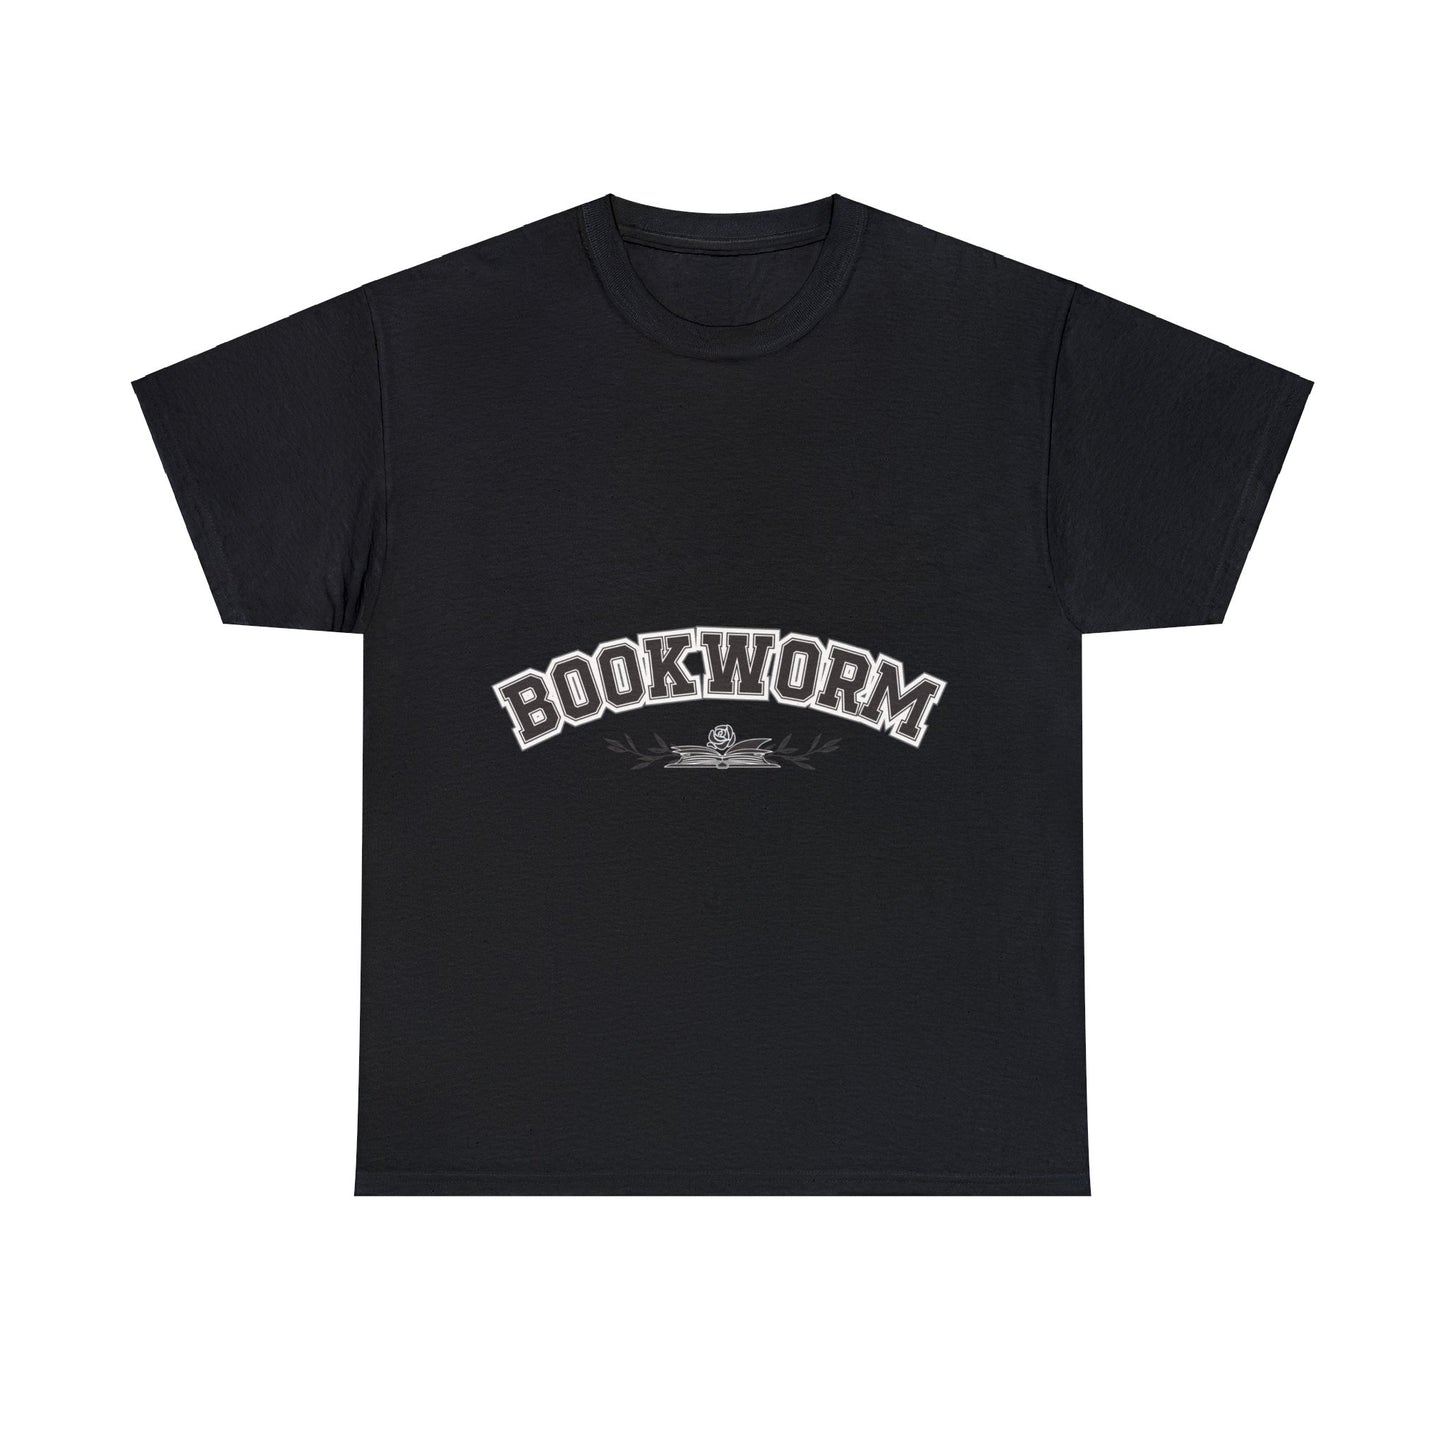 Bookworm - Unisex T-Shirt